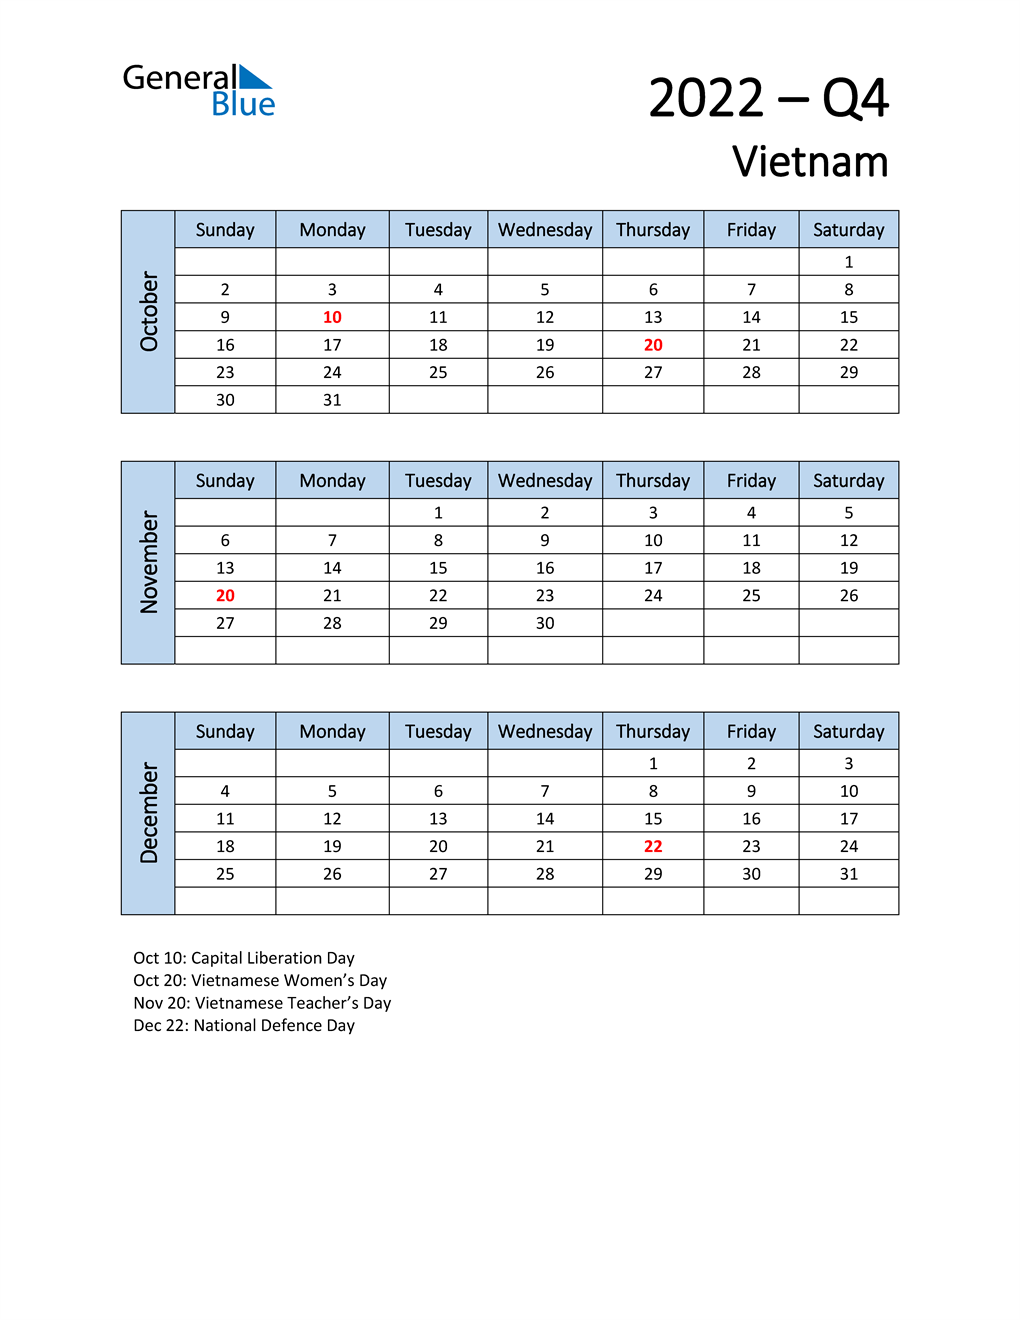  Free Q4 2022 Calendar for Vietnam